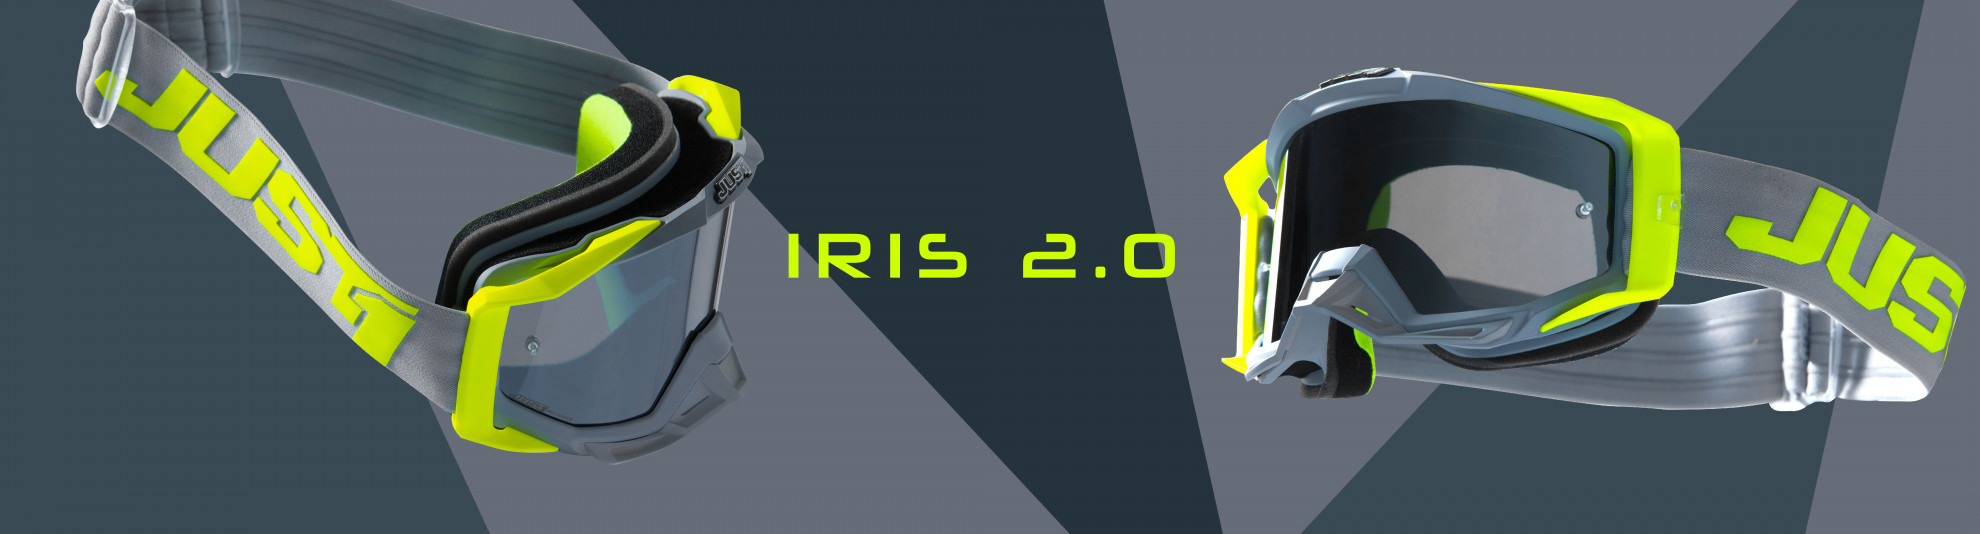 IRIS 2.0